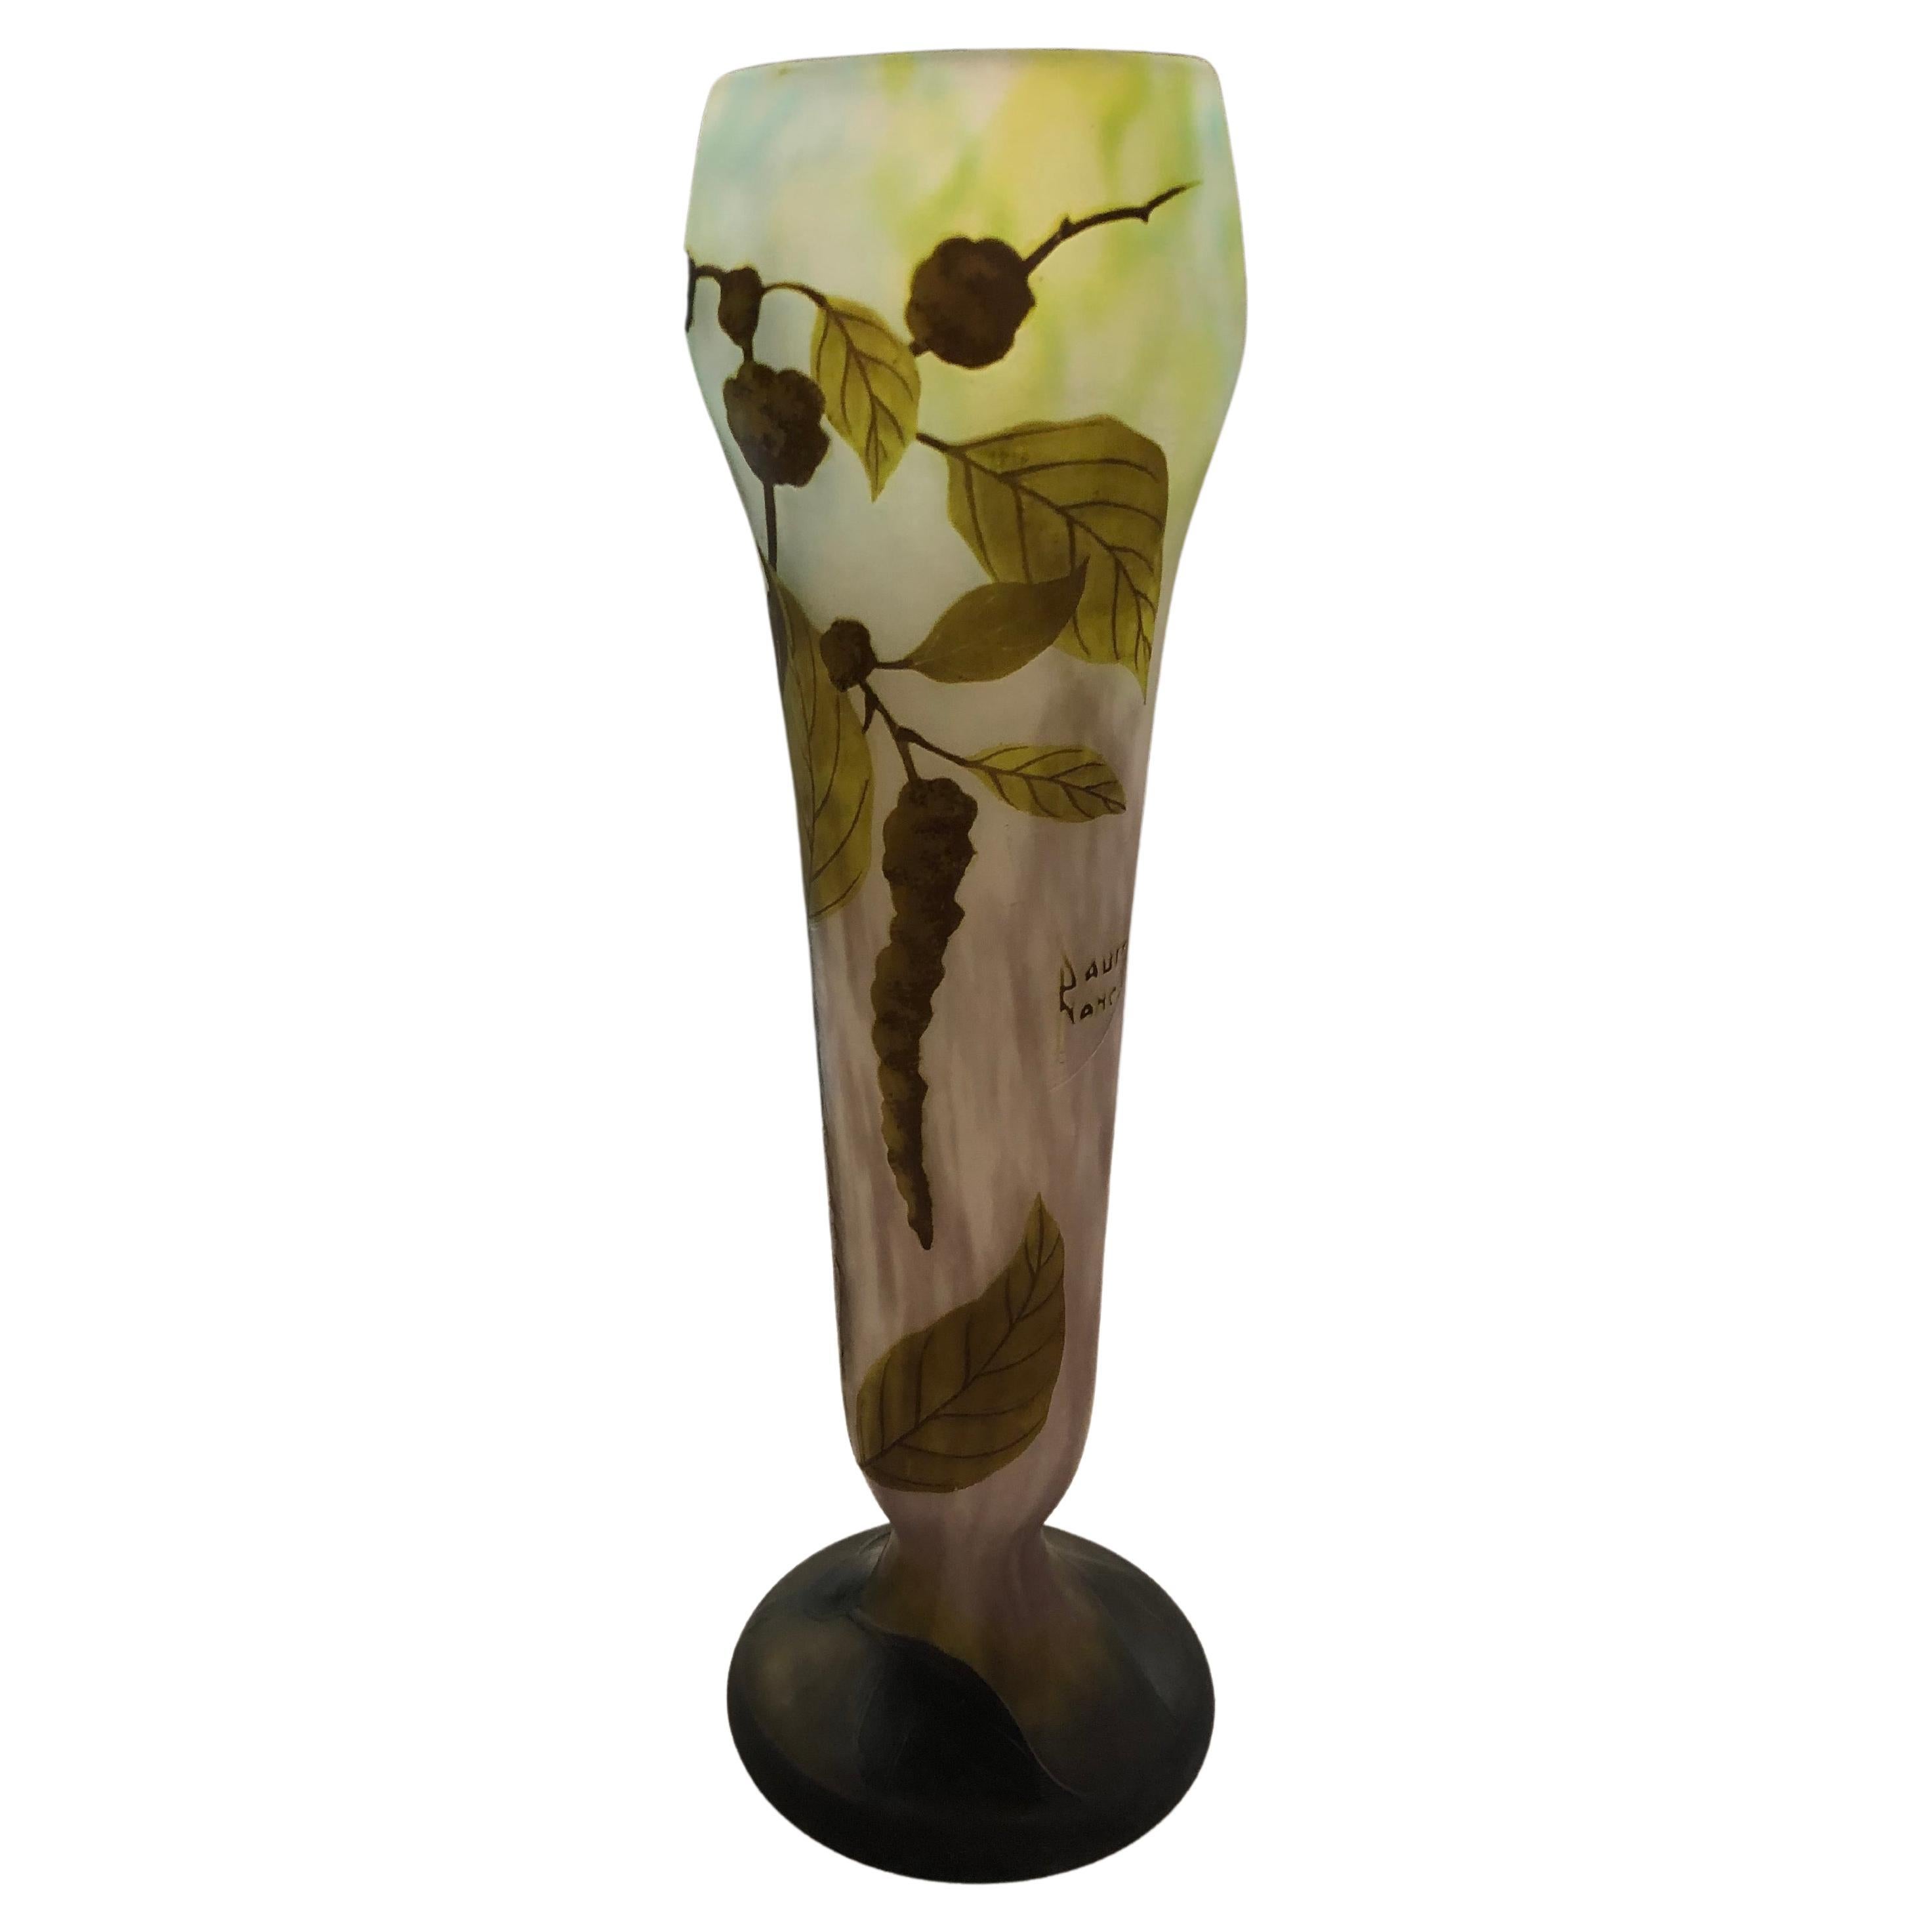 Vase, enseigne : Daum Nancy , 1910, Style : Jugendstil, Art Nouveau, Liberty